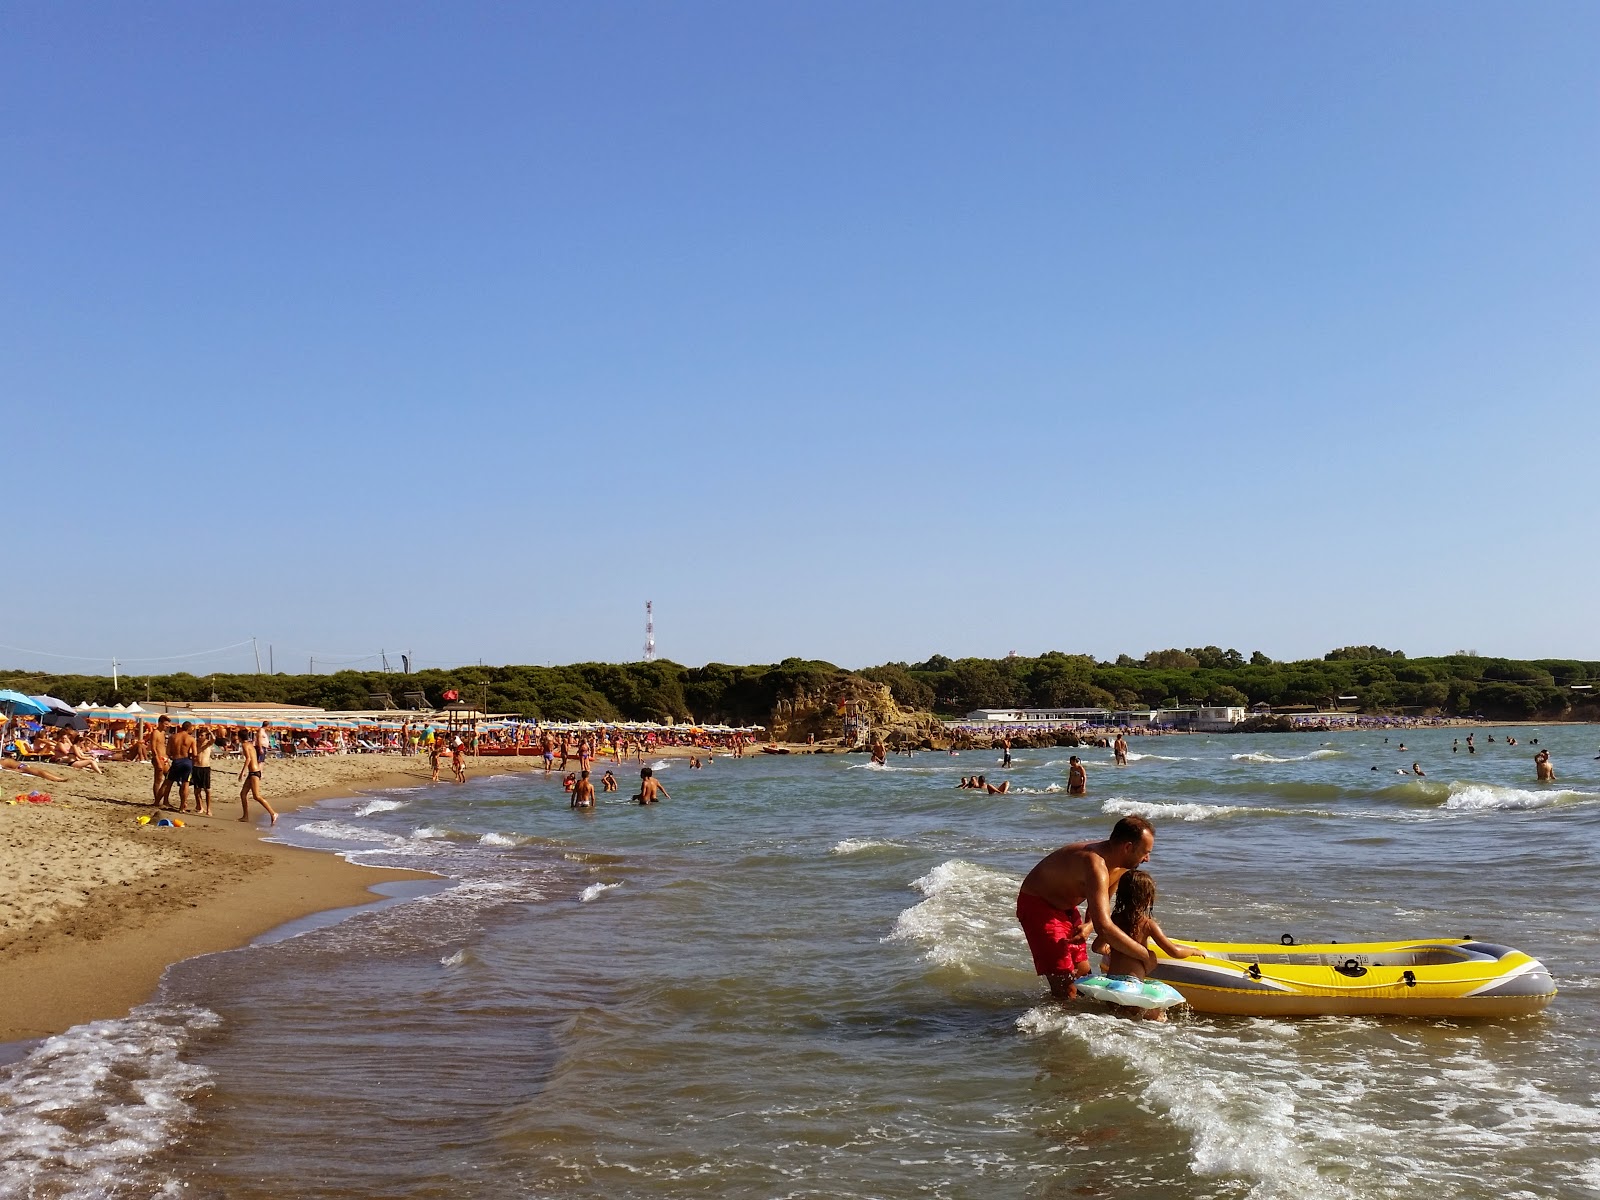 Zdjęcie Er Corsaro beach - popularne miejsce wśród znawców relaksu